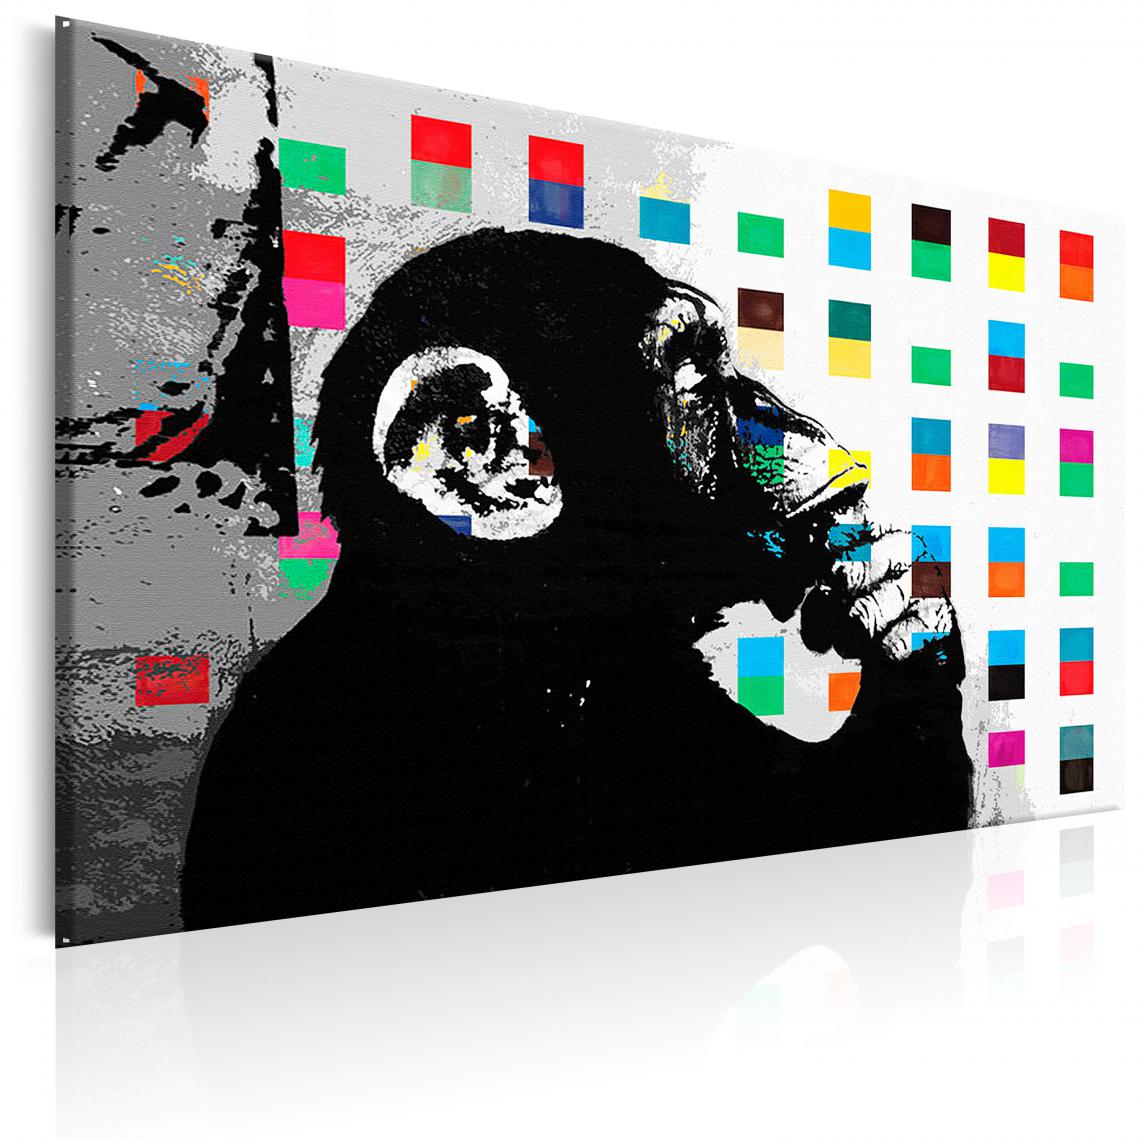 Decoshop26 - Tableau sur toile décoration murale image imprimée cadre en bois à suspendre Banksy le singe penseur 120x80 cm 11_0003470 - Tableaux, peintures